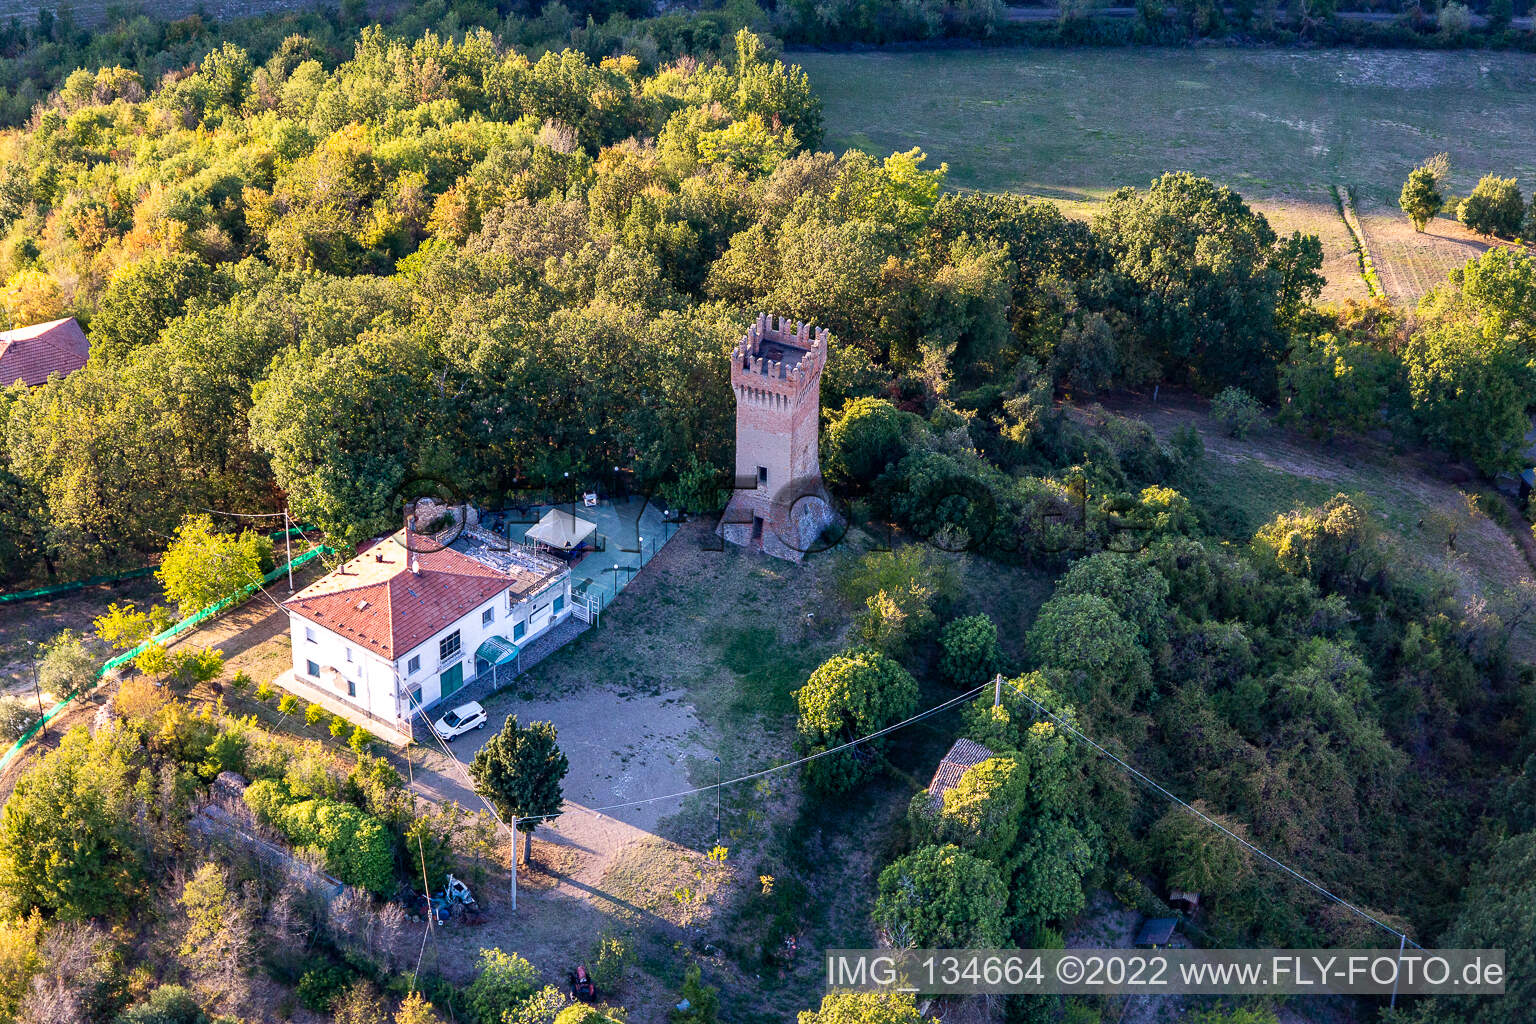 Castello di Dinazzano in Casalgrande im Bundesland Reggio Emilia, Italien